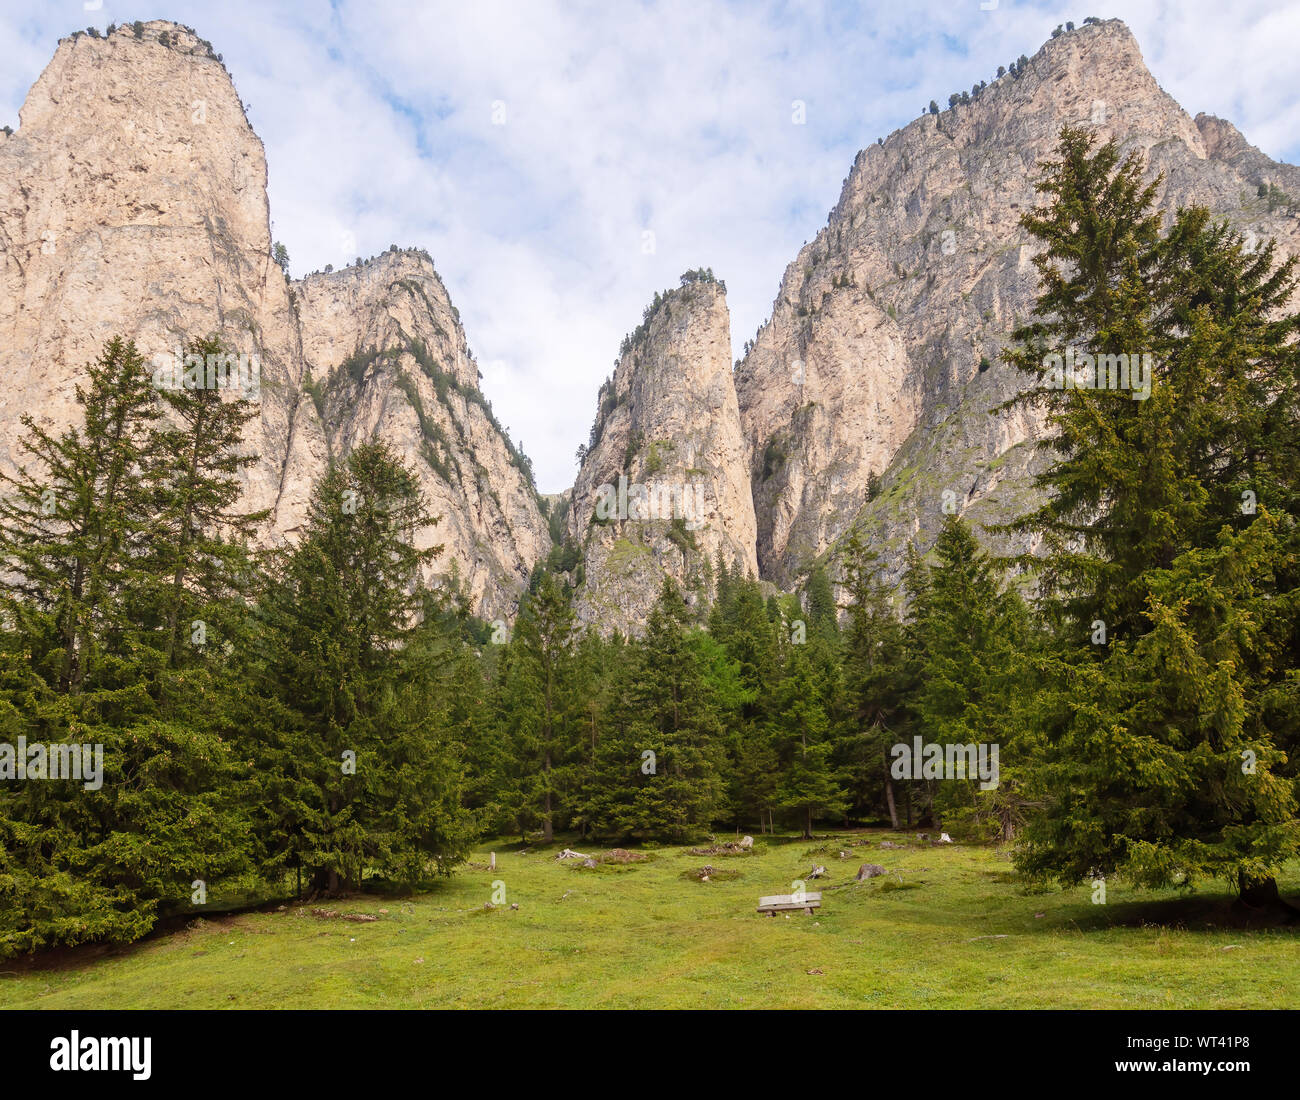 Dolomiten Alpen im Hintergrund. Rocky Mountains in der Nähe von Selva di Val Gardena, Südtirol, Südtirol. Keine Personen, ideal Hintergrund. Stockfoto